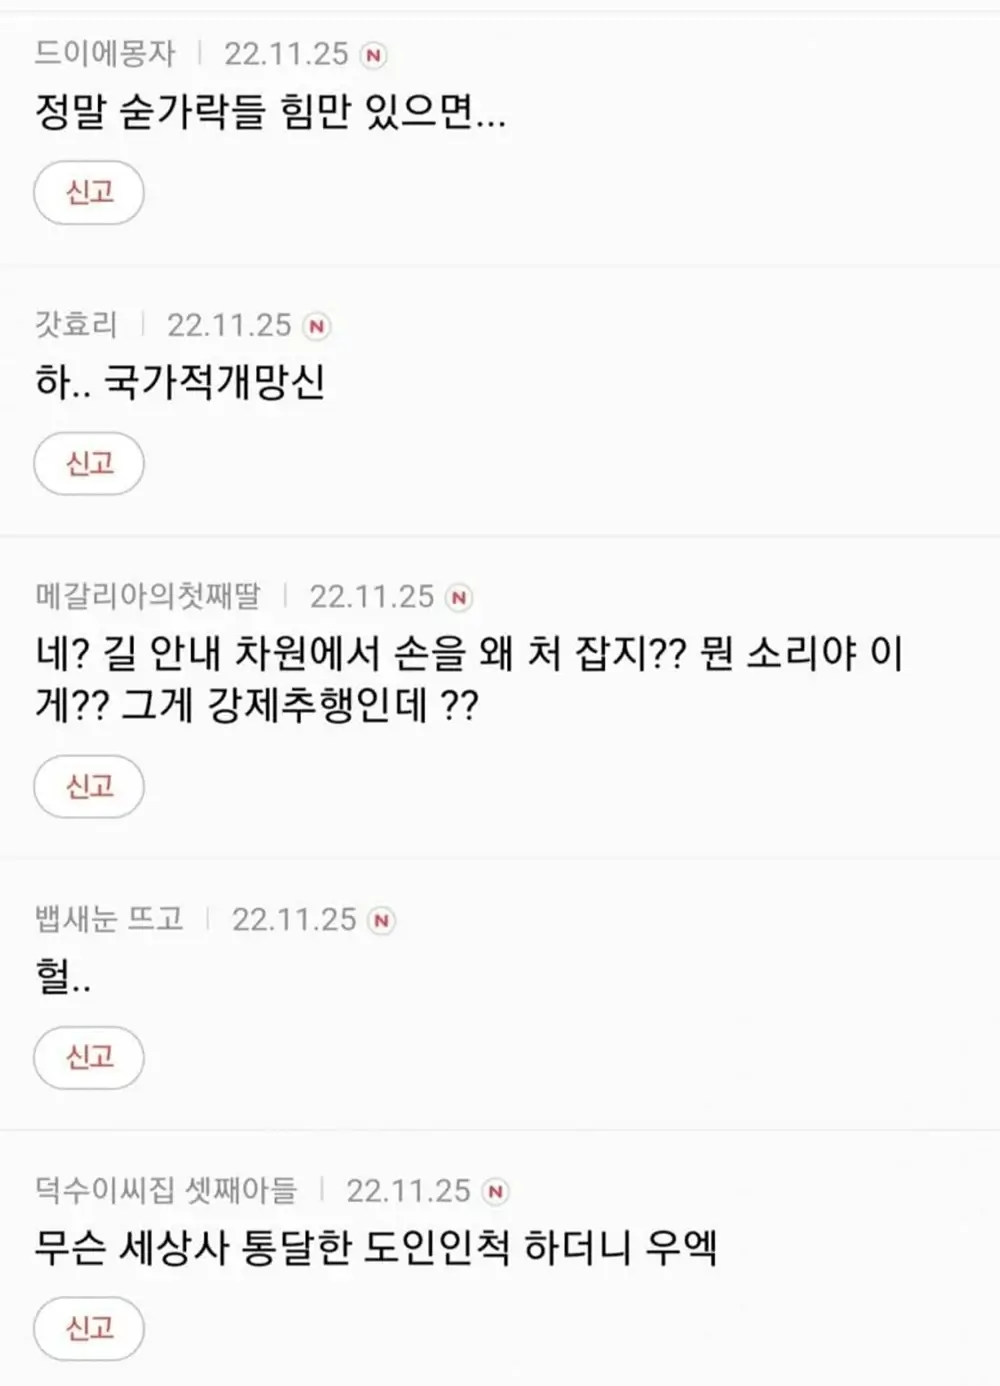 오영수 강제추행 혐의 언냐들 반응 7